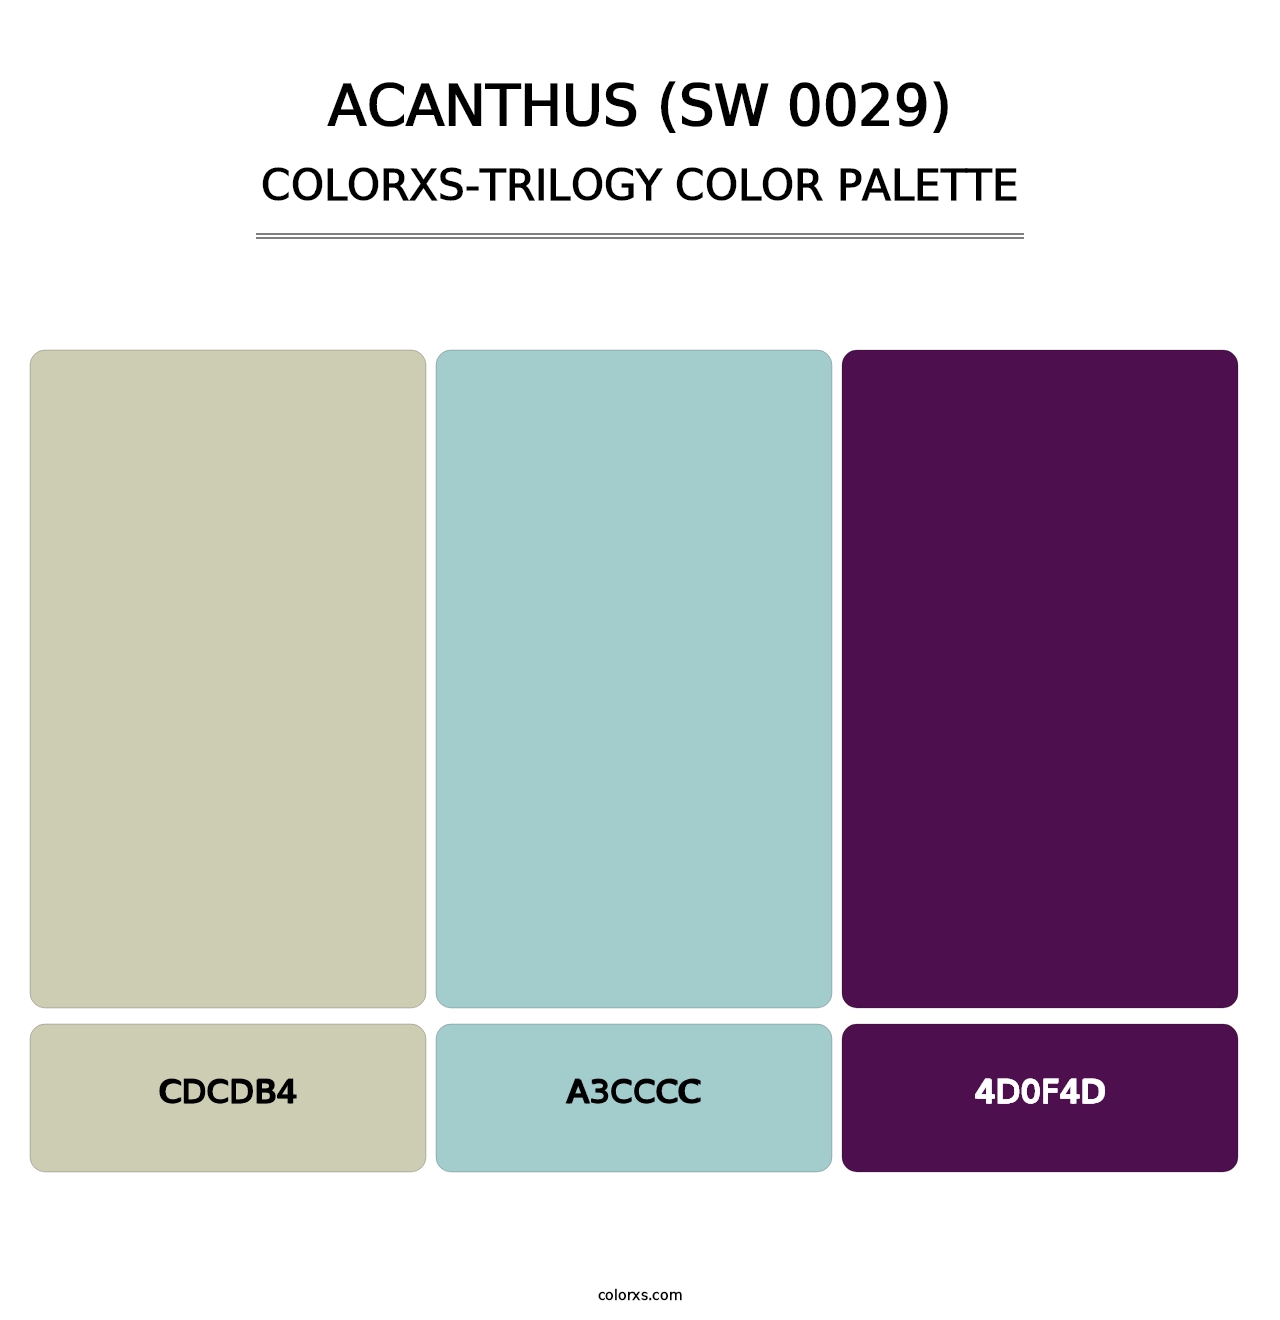 Acanthus (SW 0029) - Colorxs Trilogy Palette